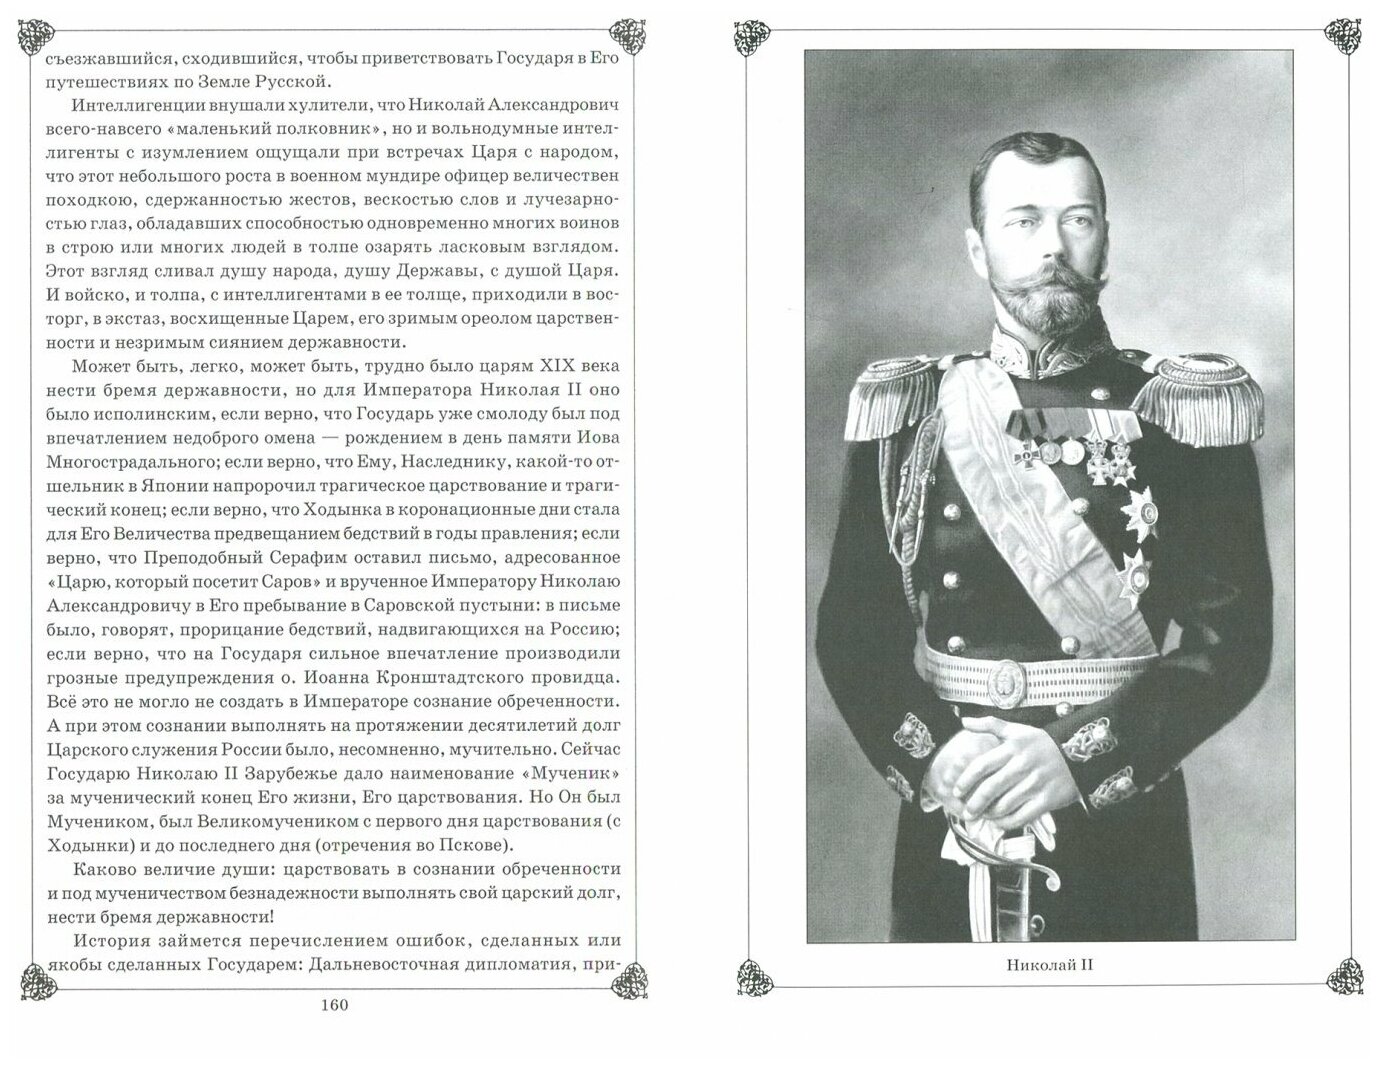 Николай II. Воспоминания и размышления о Святом государе - фото №2